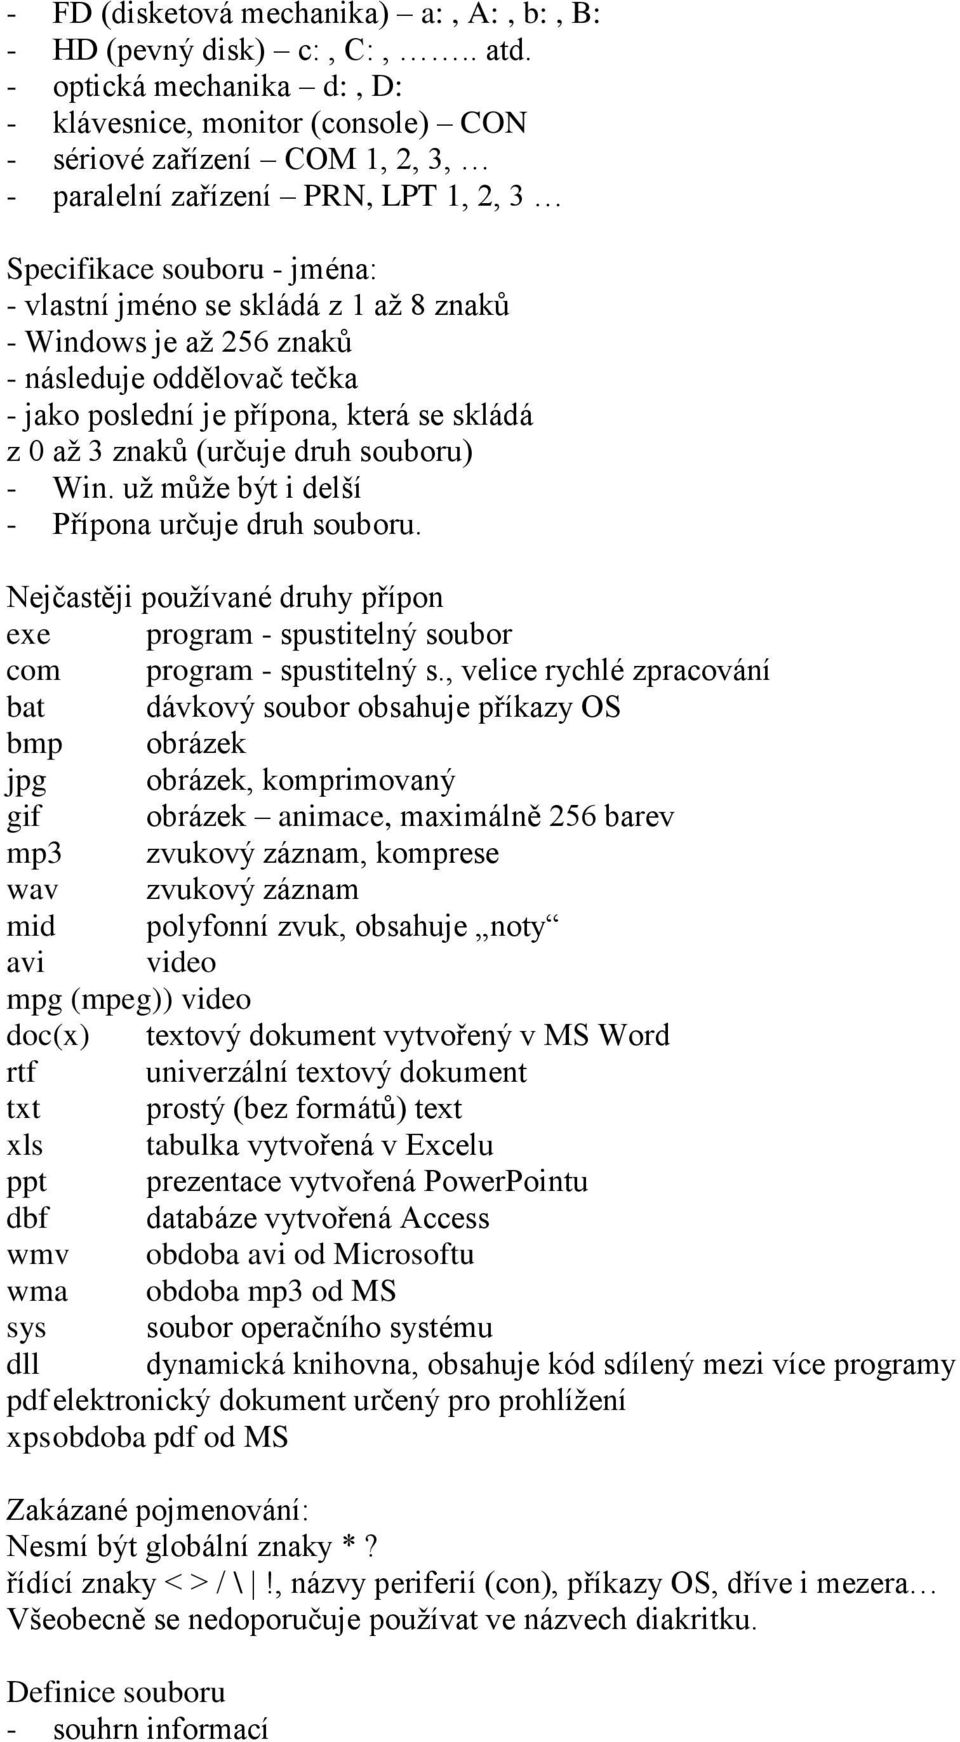 znaků - Windows je až 256 znaků - následuje oddělovač tečka - jako poslední je přípona, která se skládá z 0 až 3 znaků (určuje druh souboru) - Win. už může být i delší - Přípona určuje druh souboru.